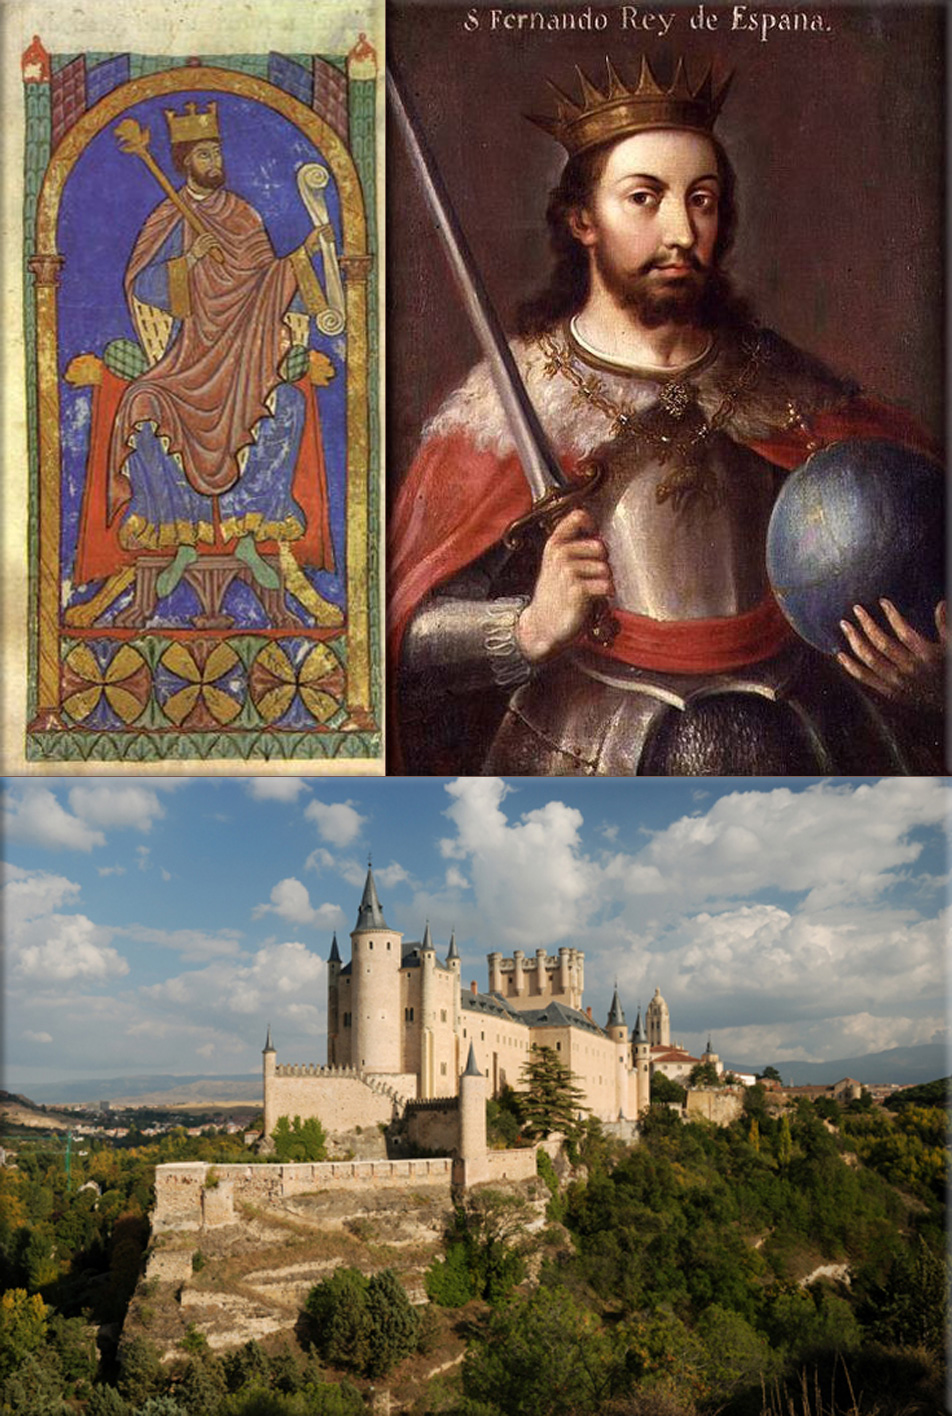 Alfonso VII of Castile and León ● Alcazar of Segovia, Castile and León, Spain